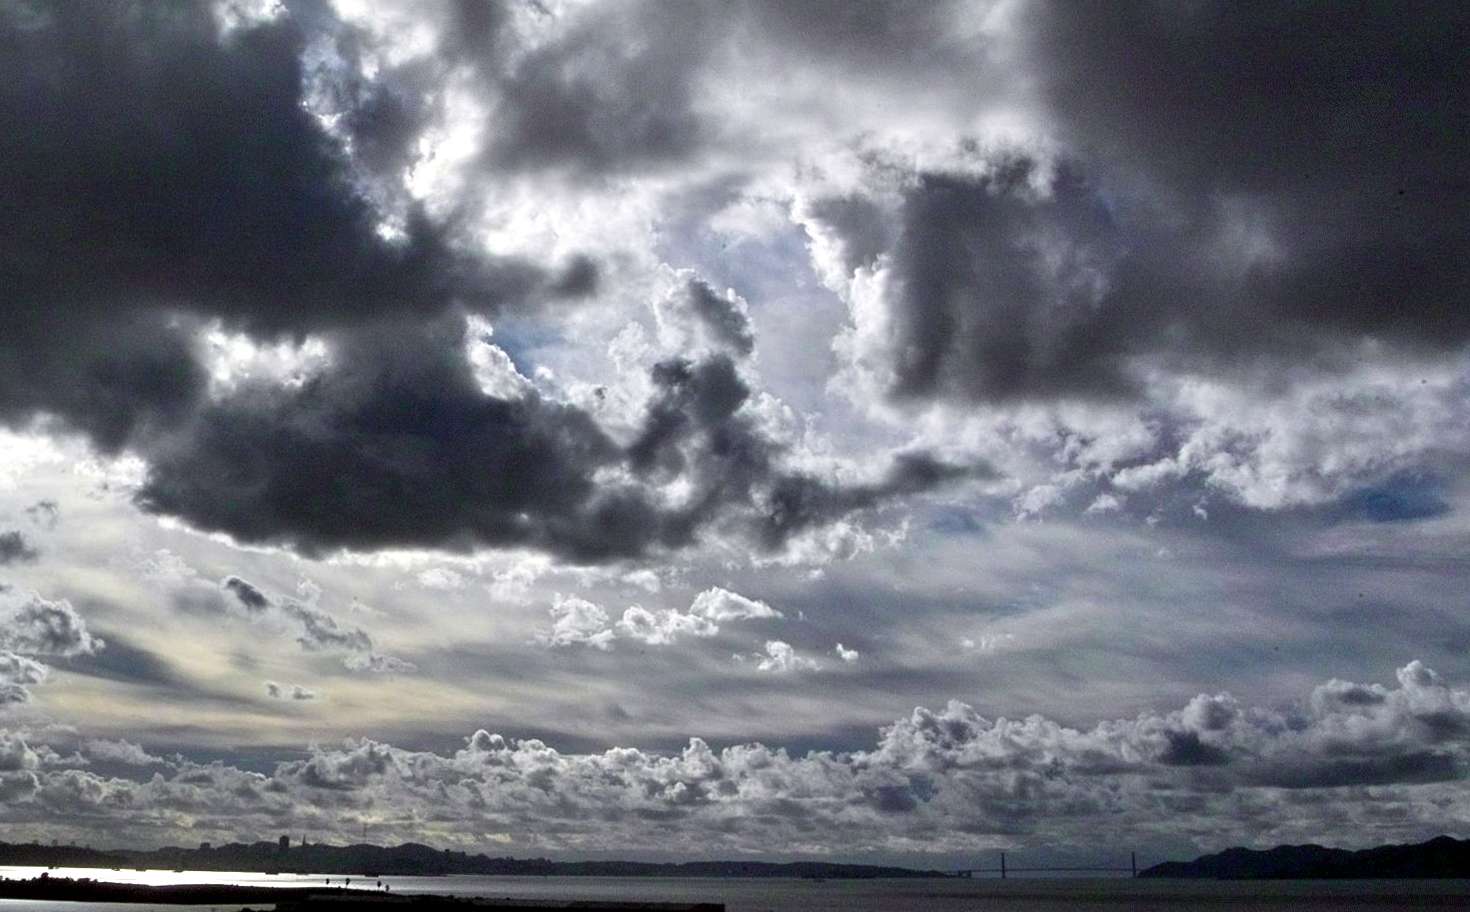 Meteo Ragusa: oggi venerdì 5 Gennaio nuvoloso per velature.